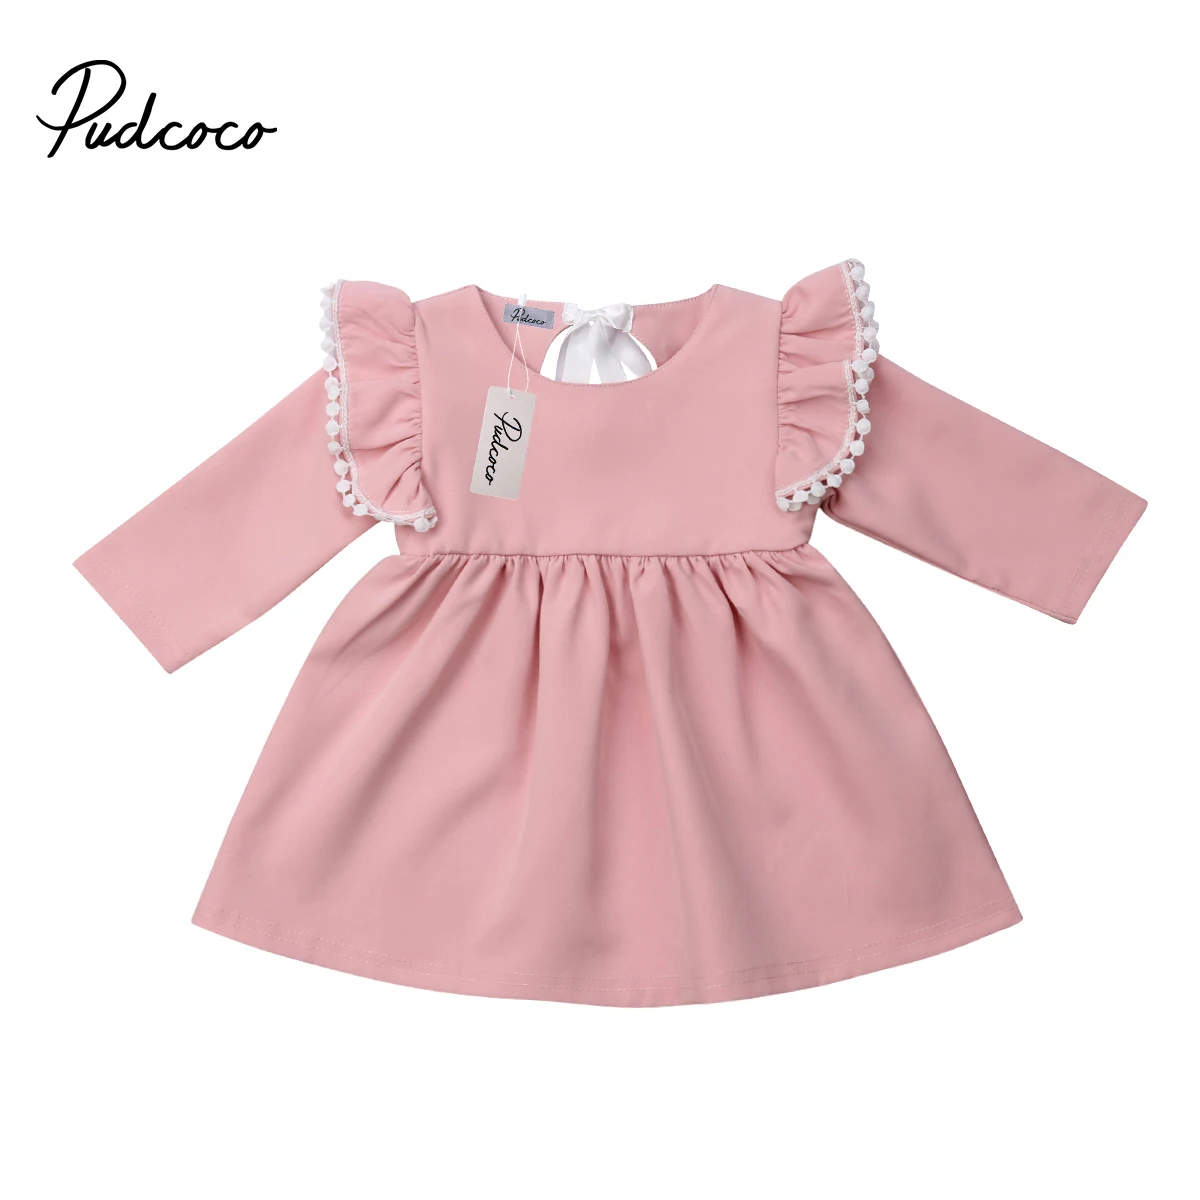 Новинка 2019 года Pudcoco, платье принцессы с оборками для новорожденных девочек вечерние детское платье для вечеринки, свадьбы, торжества